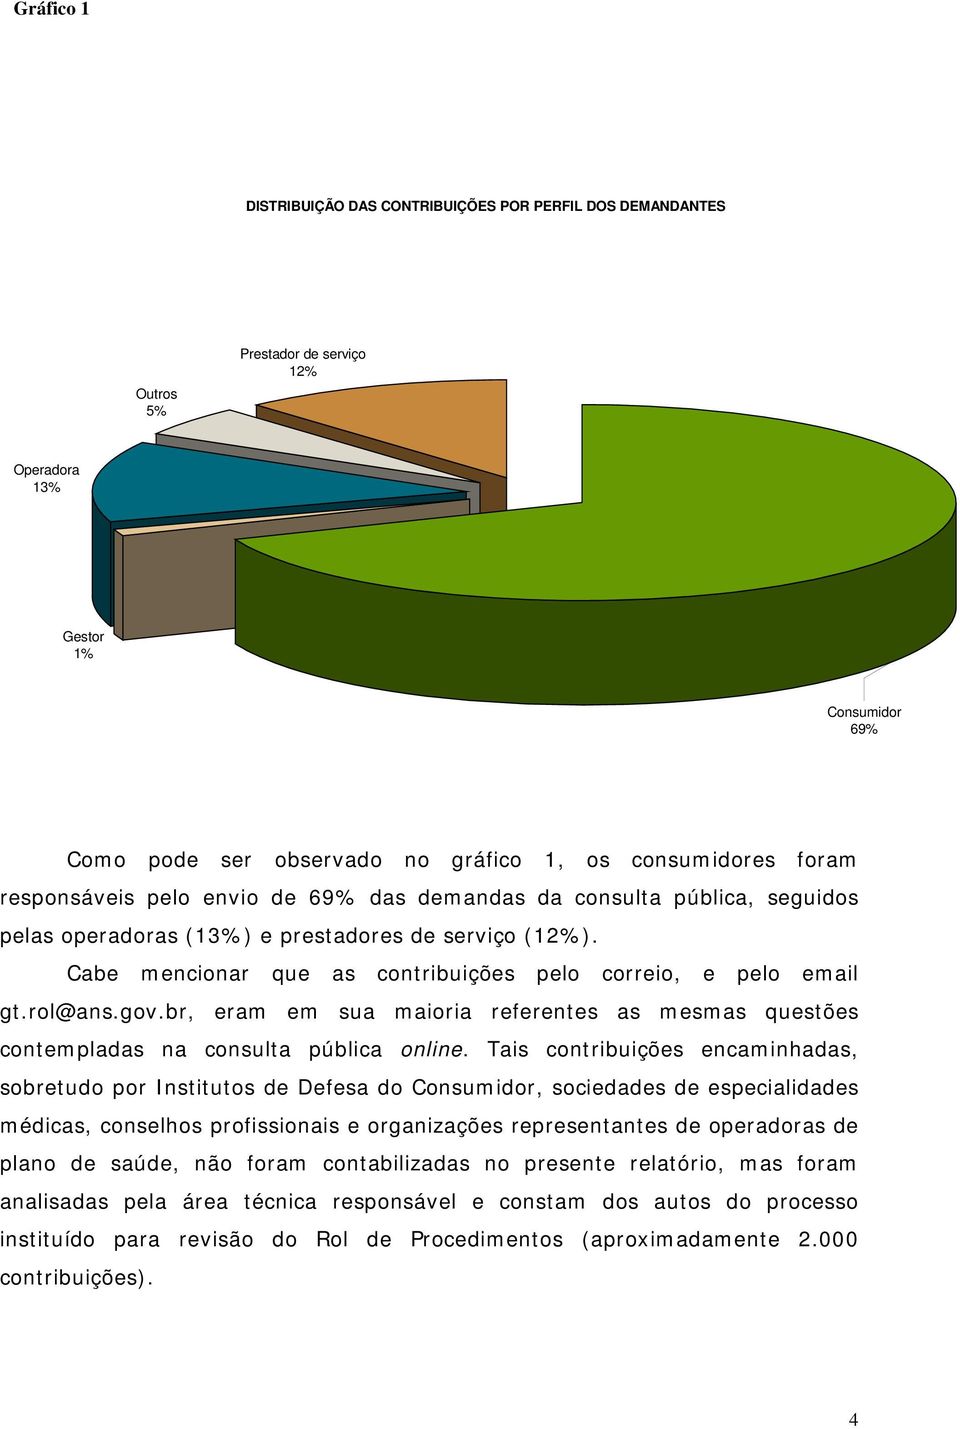 Cabe mencionar que as contribuições pelo correio, e pelo email gt.rol@ans.gov.br, eram em sua maioria referentes as mesmas questões contempladas na consulta pública online.